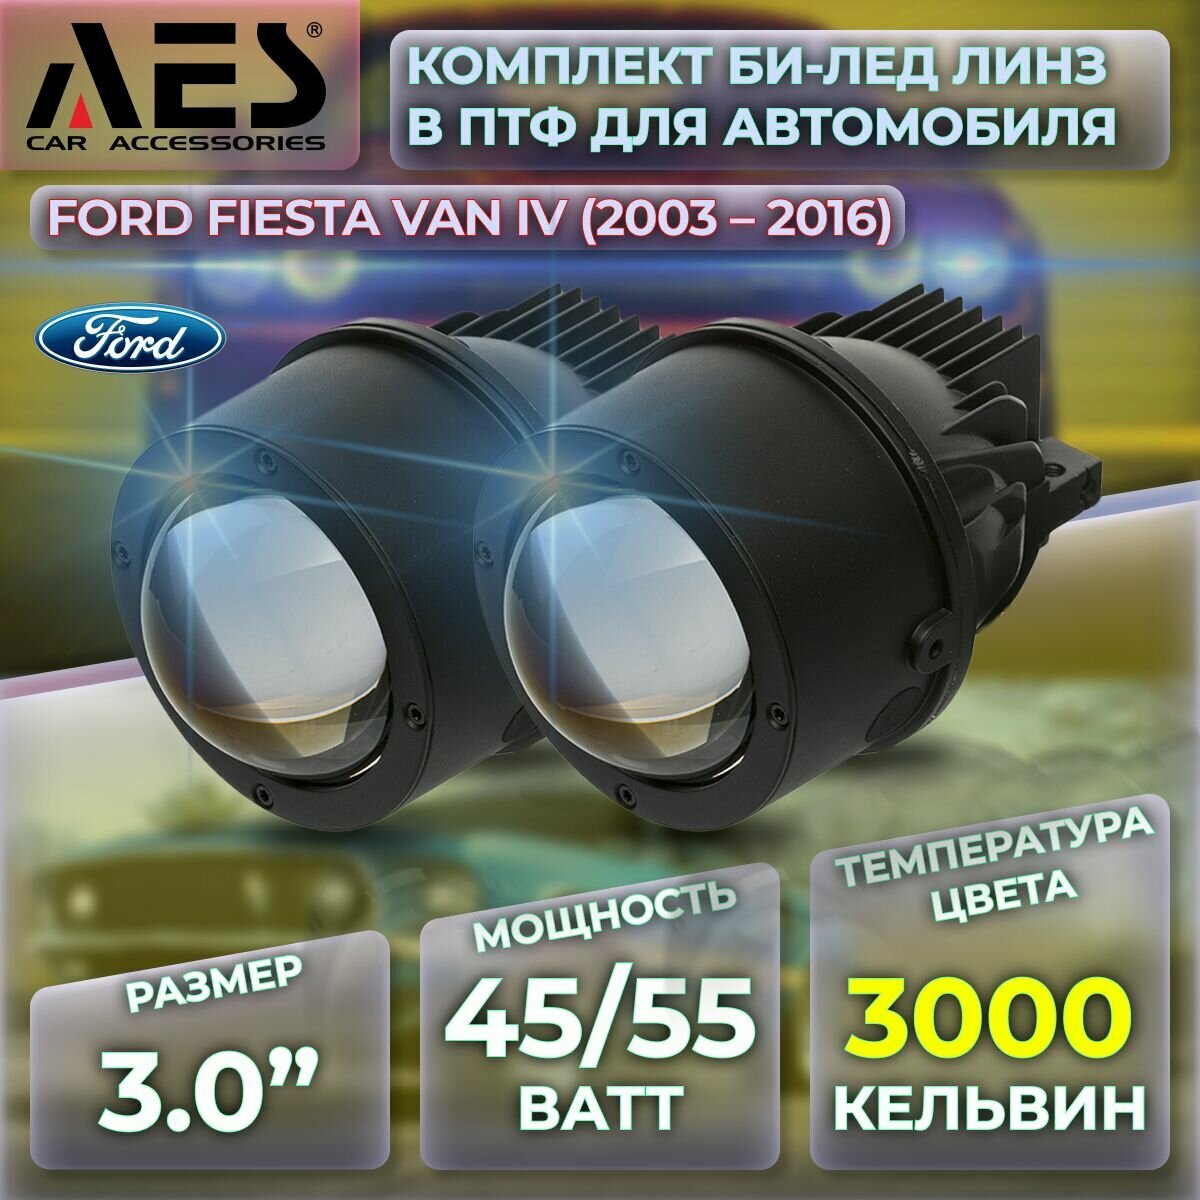 Комплект Би-лед линз в ПТФ для Ford Fiesta Van IV (2003-2016) Q8 Foglight Bi-LED Laser 3000K (2 модуля 2 кронштейна)